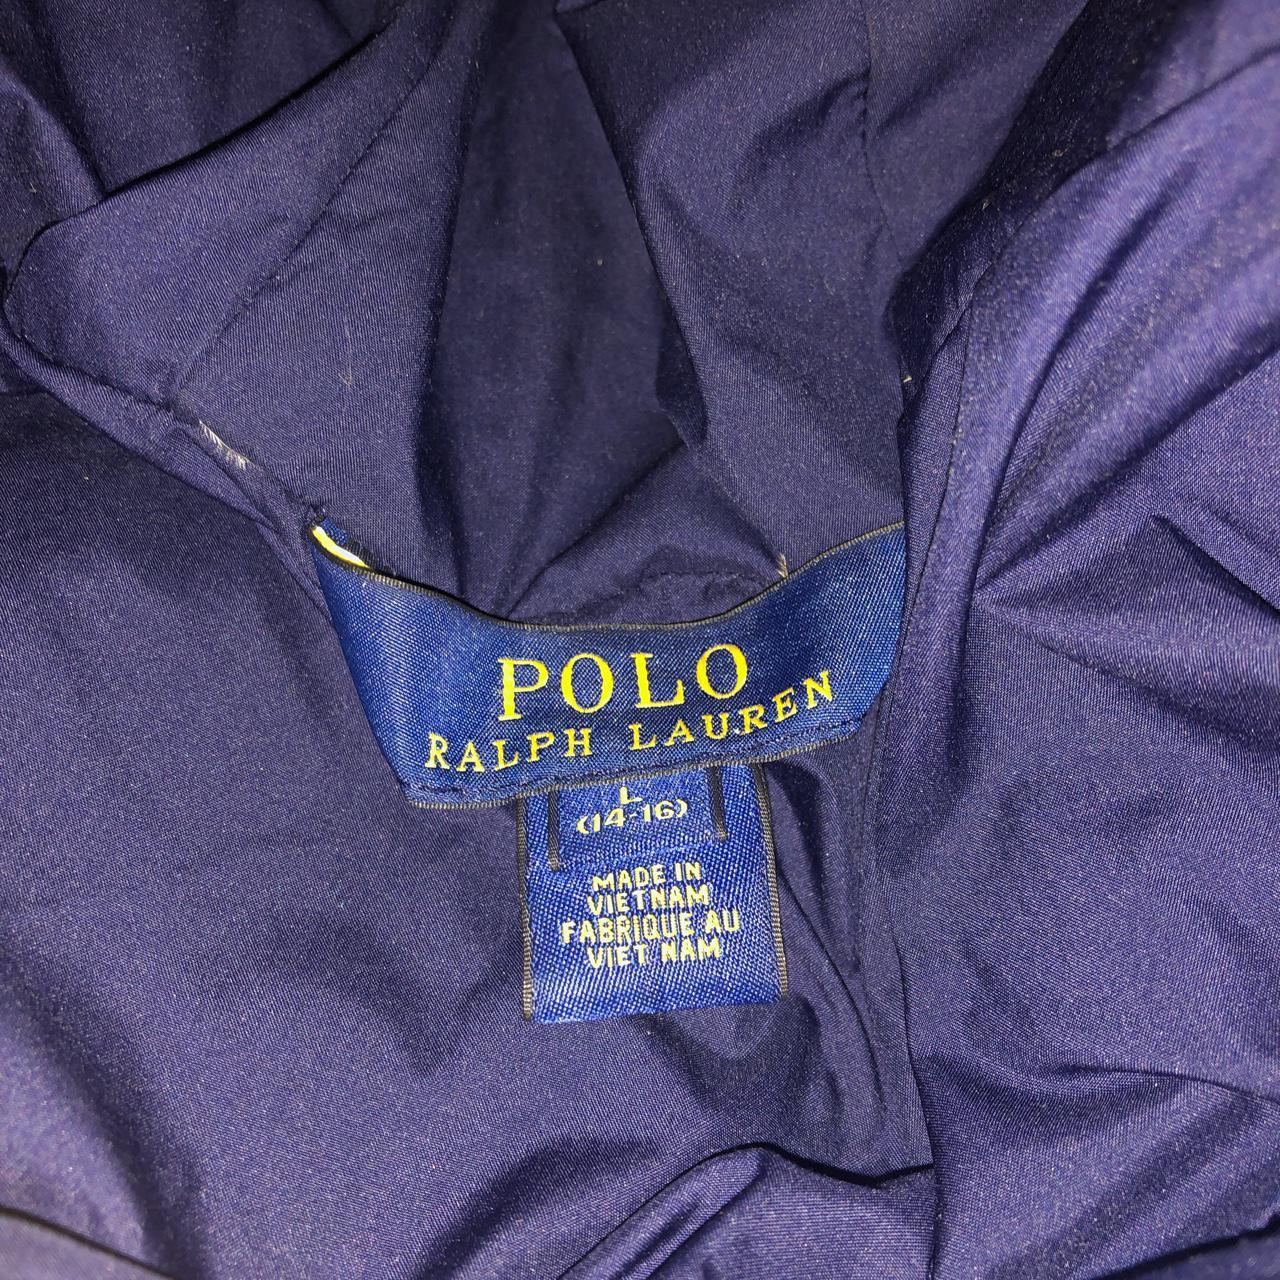 Polo Ralph Lauren Puffer Jacket Navy Blue and... - Depop